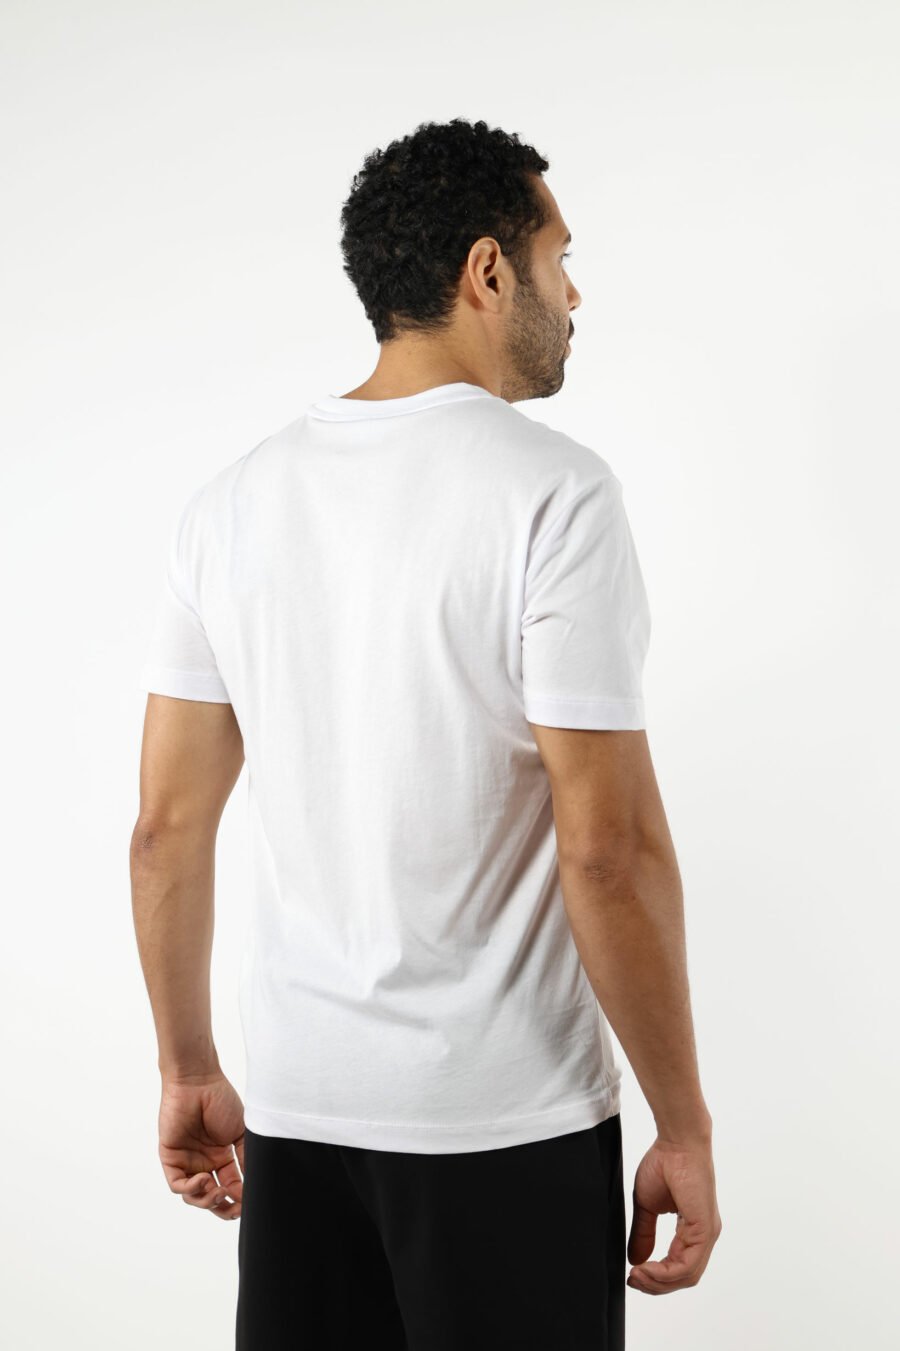 Camiseta blanca con maxilogo "lux identity" en degradé - 110856